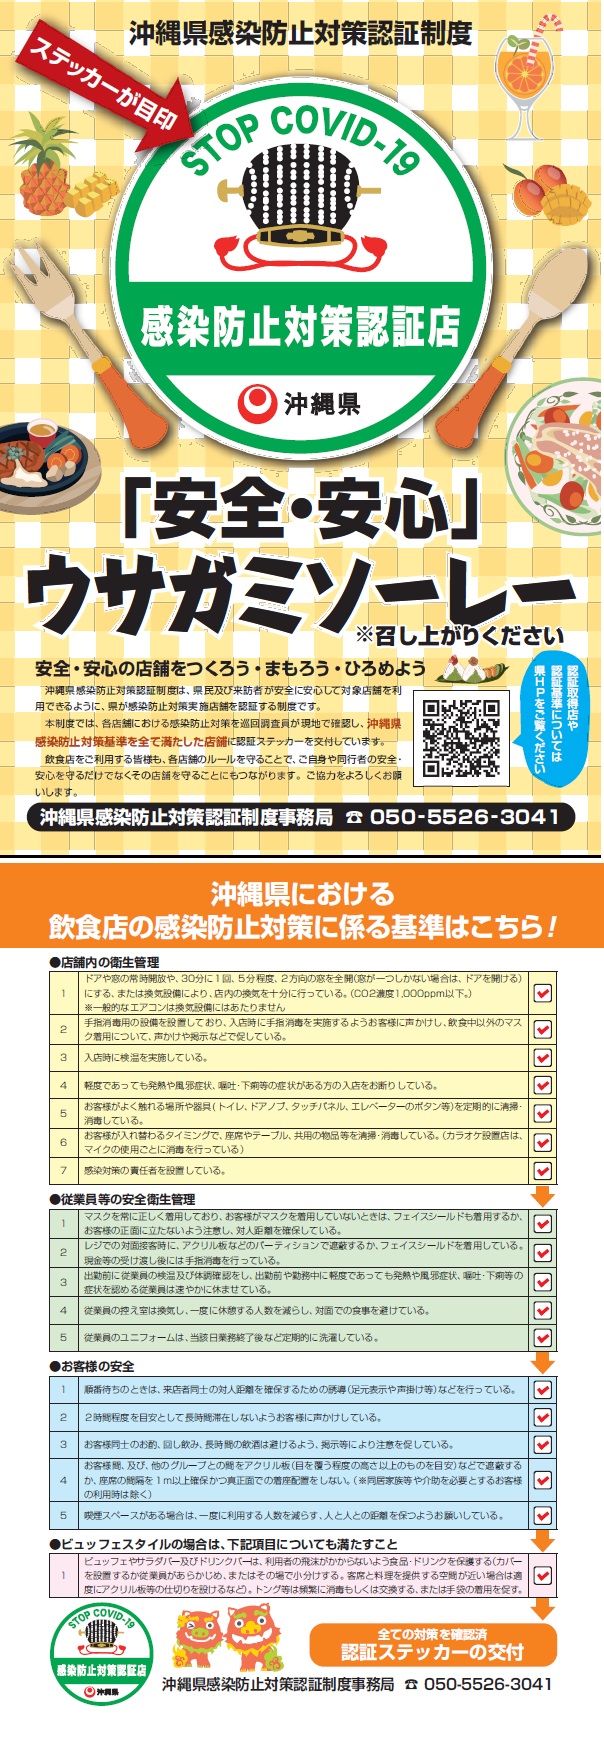 沖縄県感染防止対策認証制度（第三者認証）